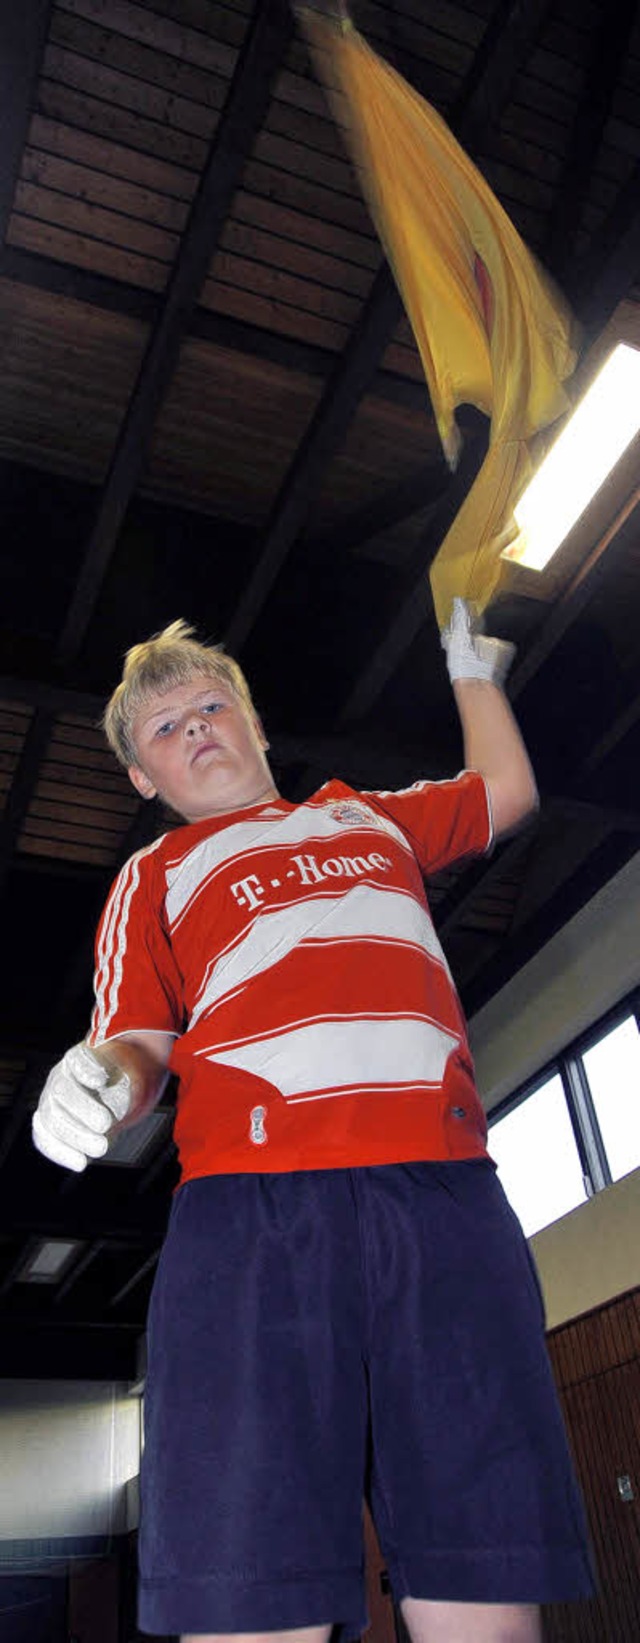 Der elfjhrige Leon Lsslin aus Rust ist Weltmeister im Fahnenschwingen.   | Foto: B. Rein